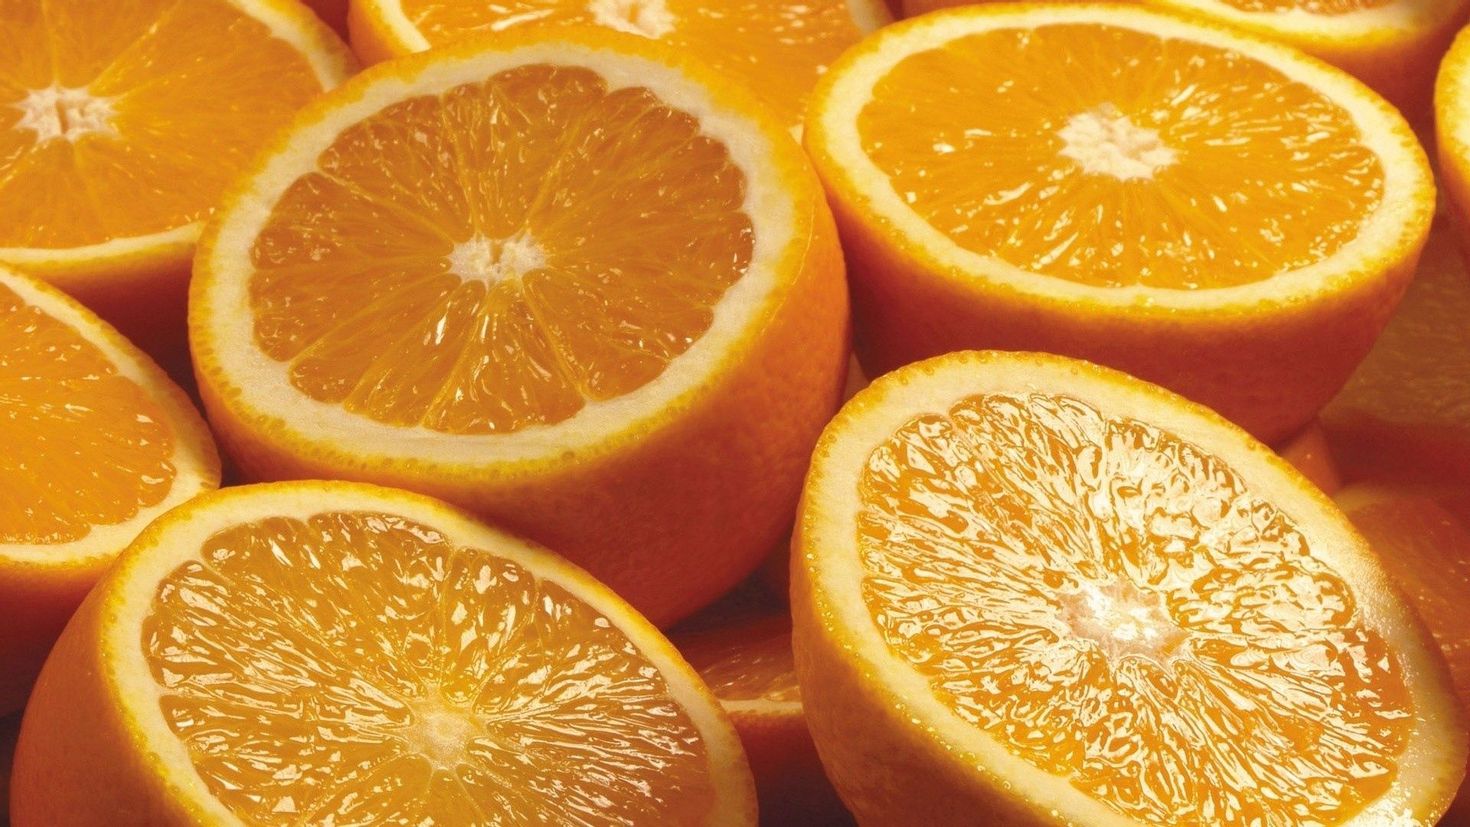 Можно есть апельсины вечером